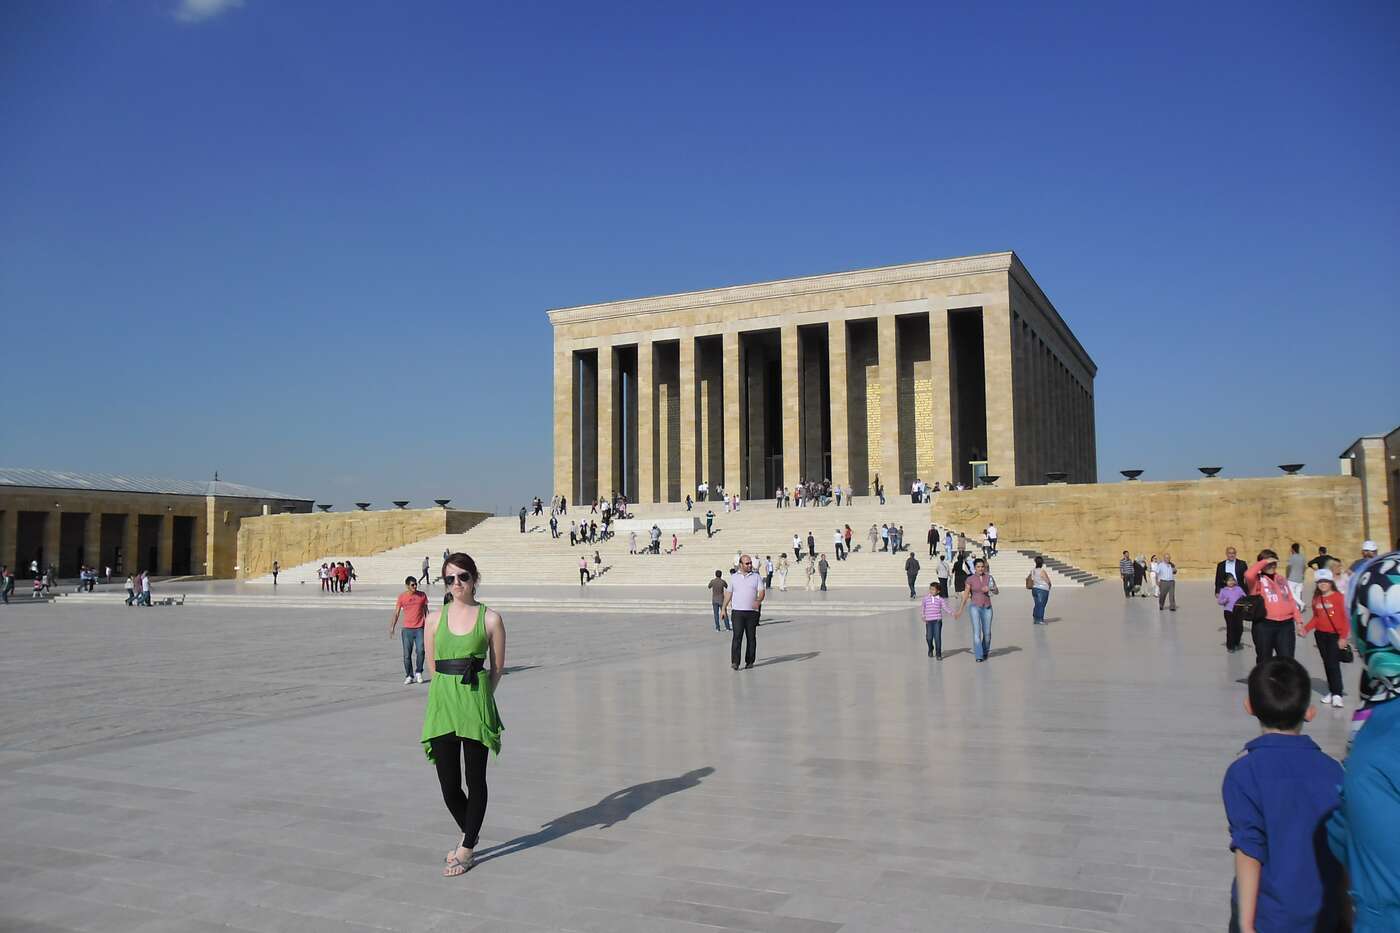 Anitkabir - das Mausoleum des geliebten Staatsgründers Atatürk